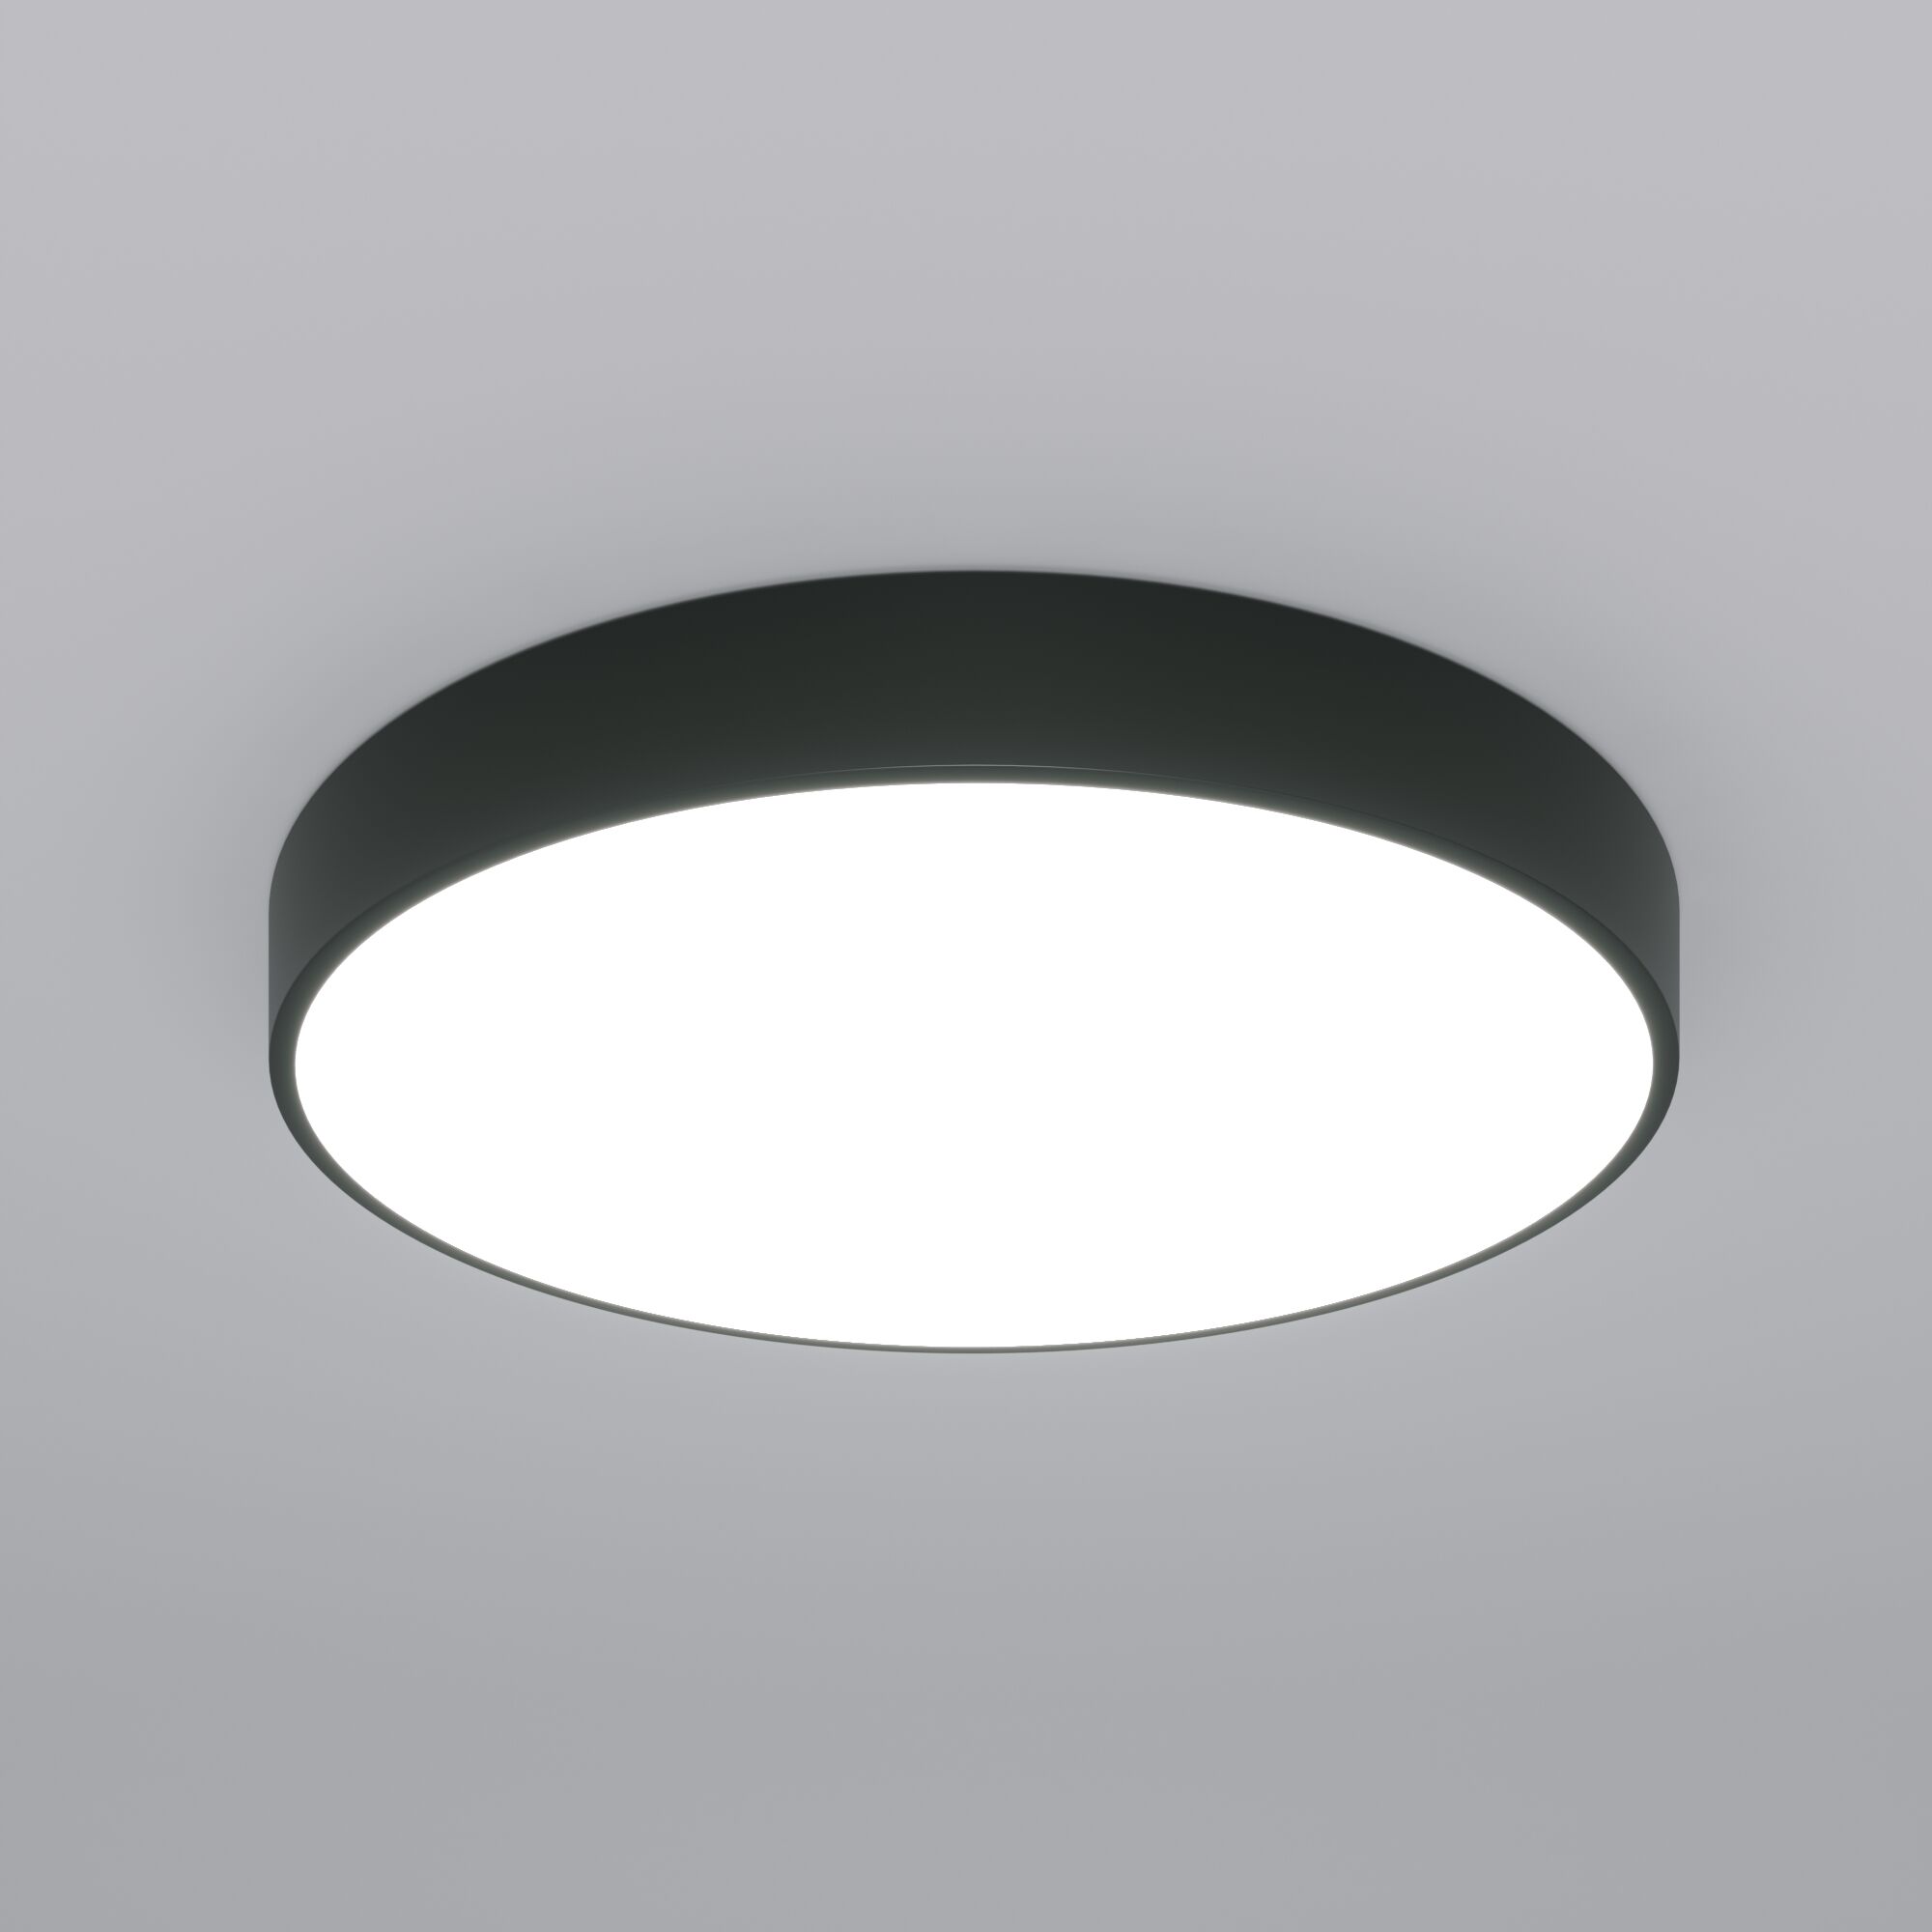 Потолочный светодиодный светильник с регулировкой яркости и цветовой температуры Eurosvet Entire 90320/1 черный. Фото 1